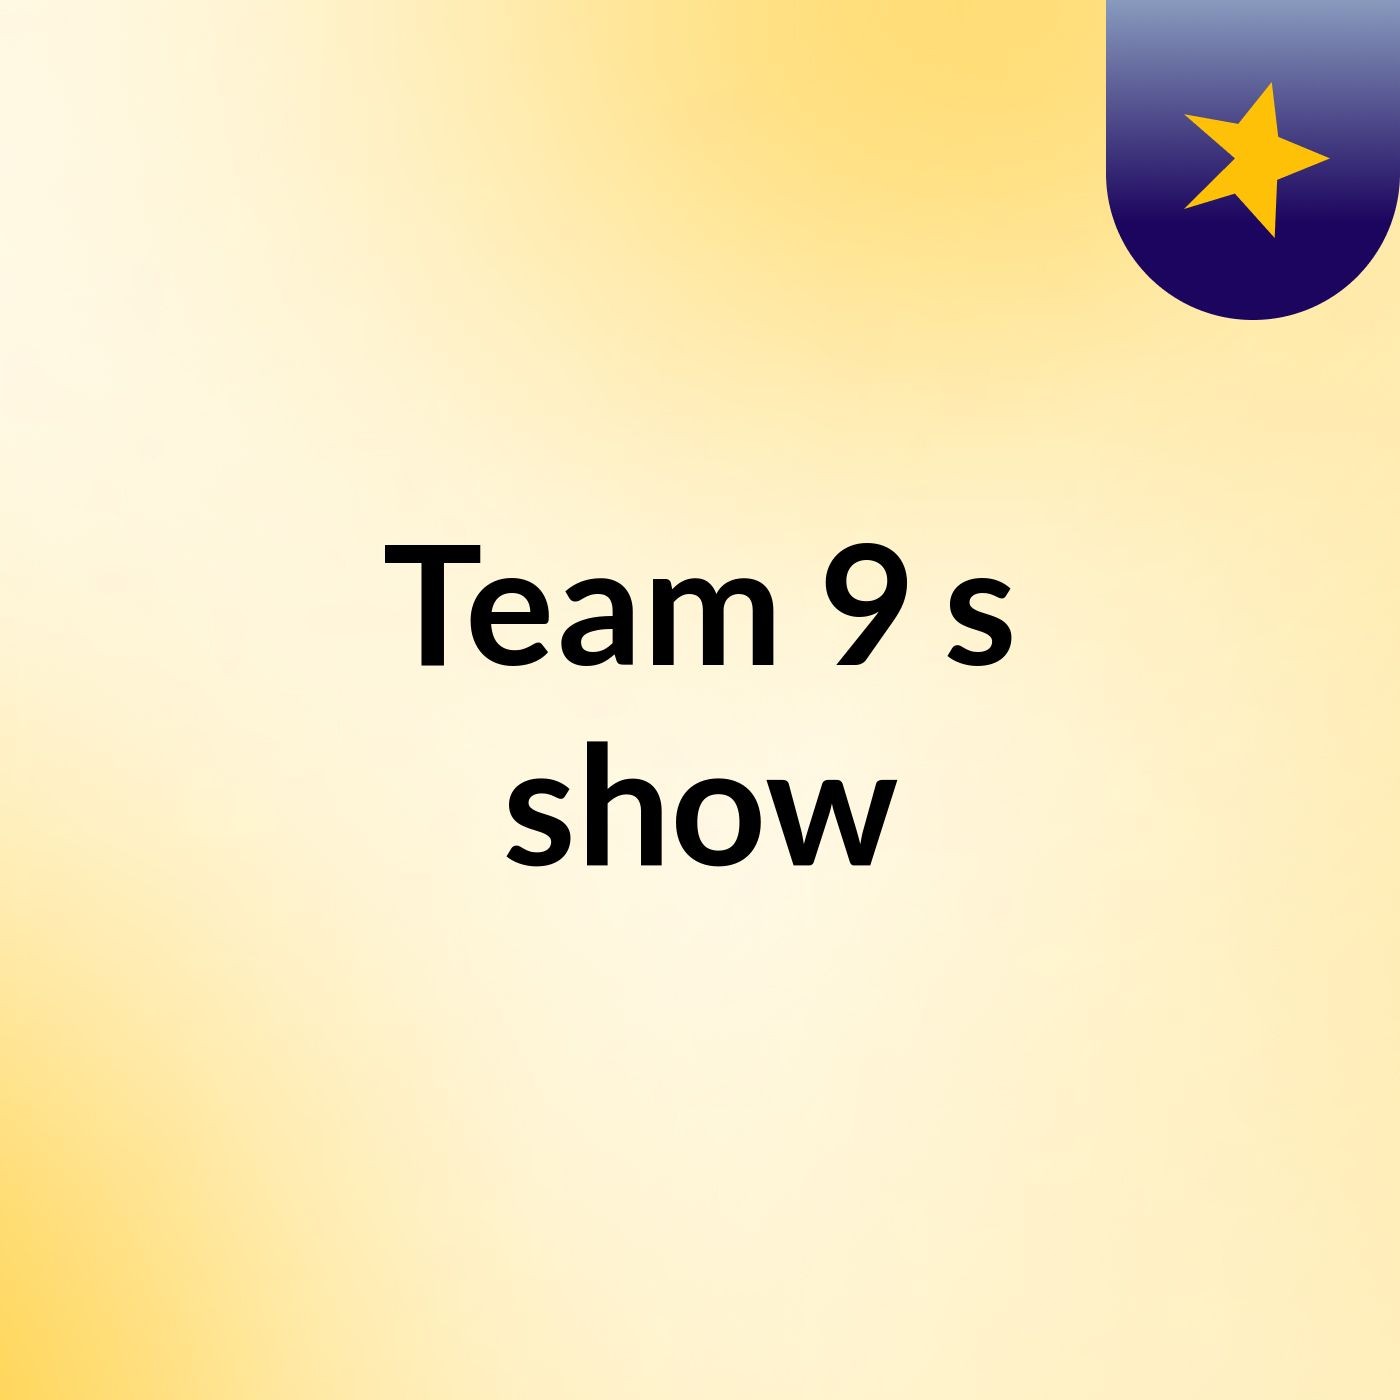 Team 9's show